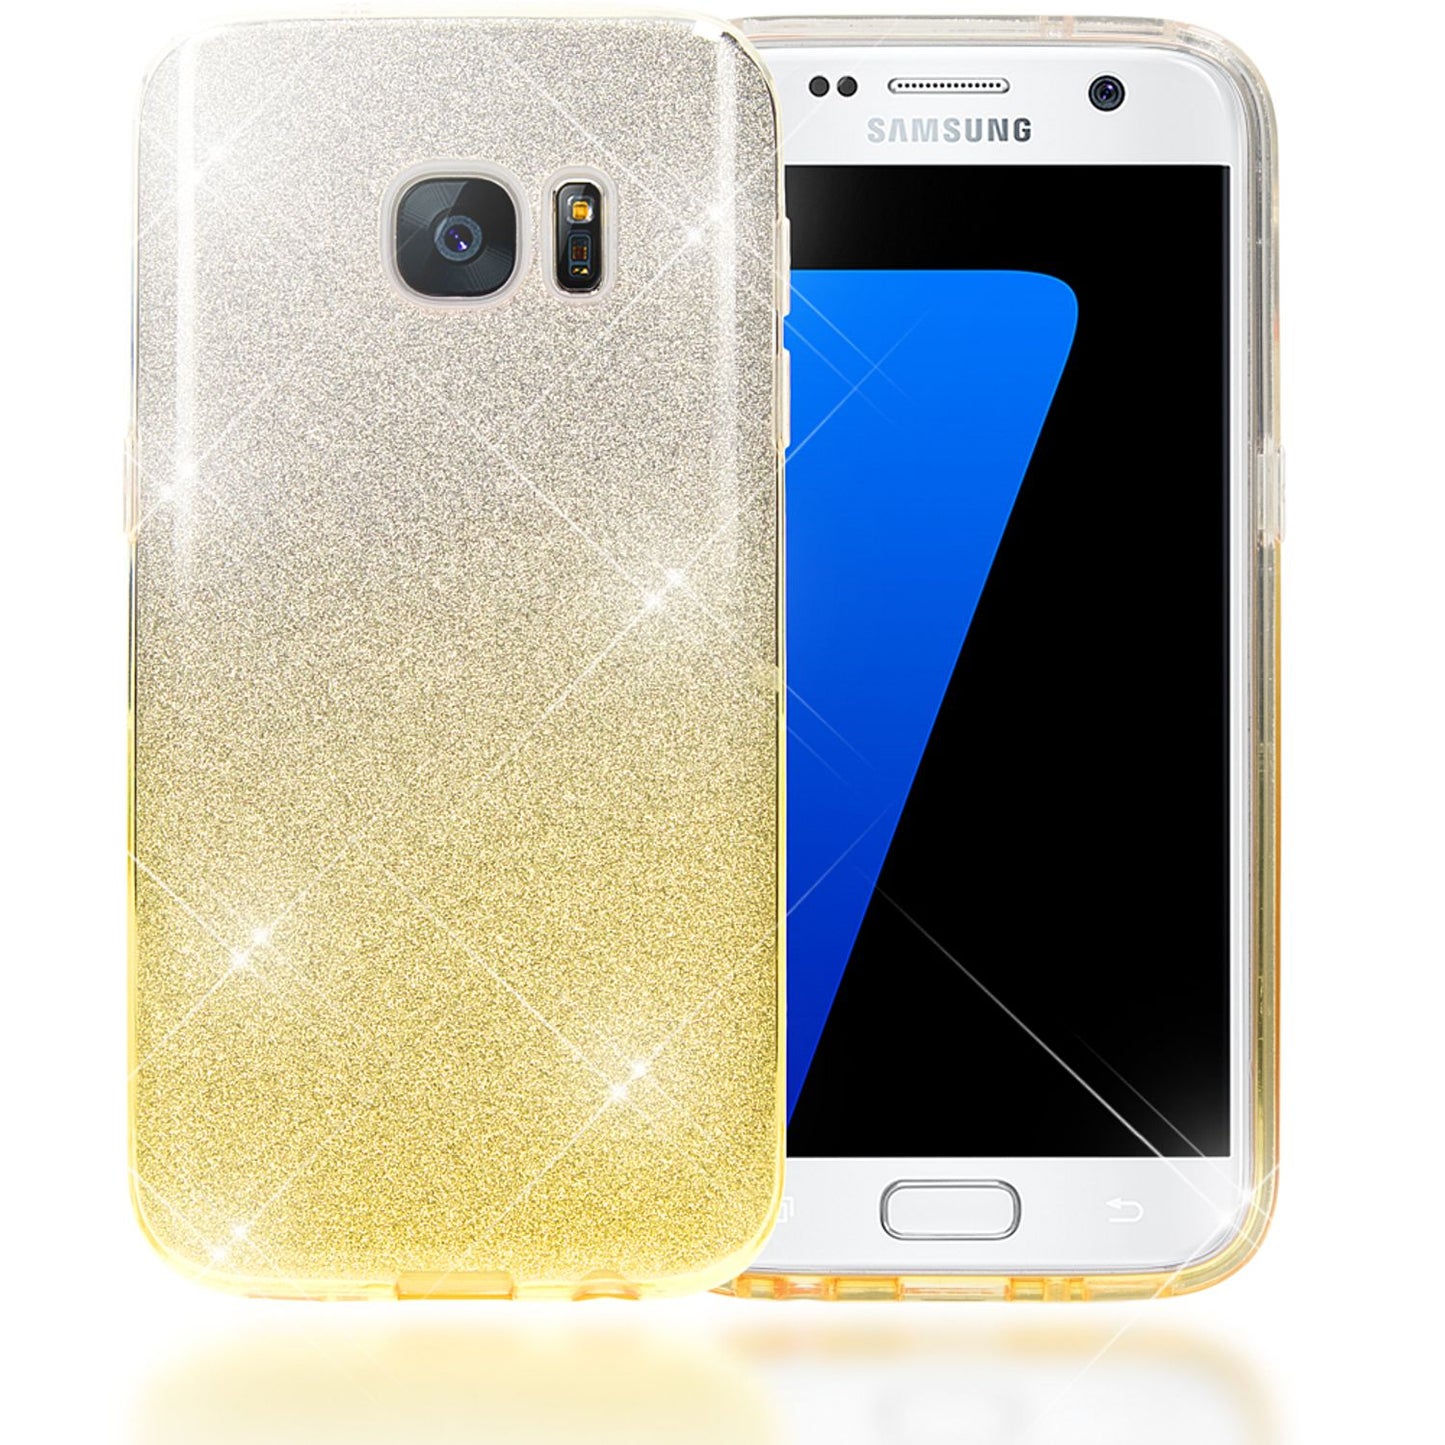 NALIA Handy Hülle für Samsung Galaxy S7, Silikon Case Cover Schutz Tasche Bumper